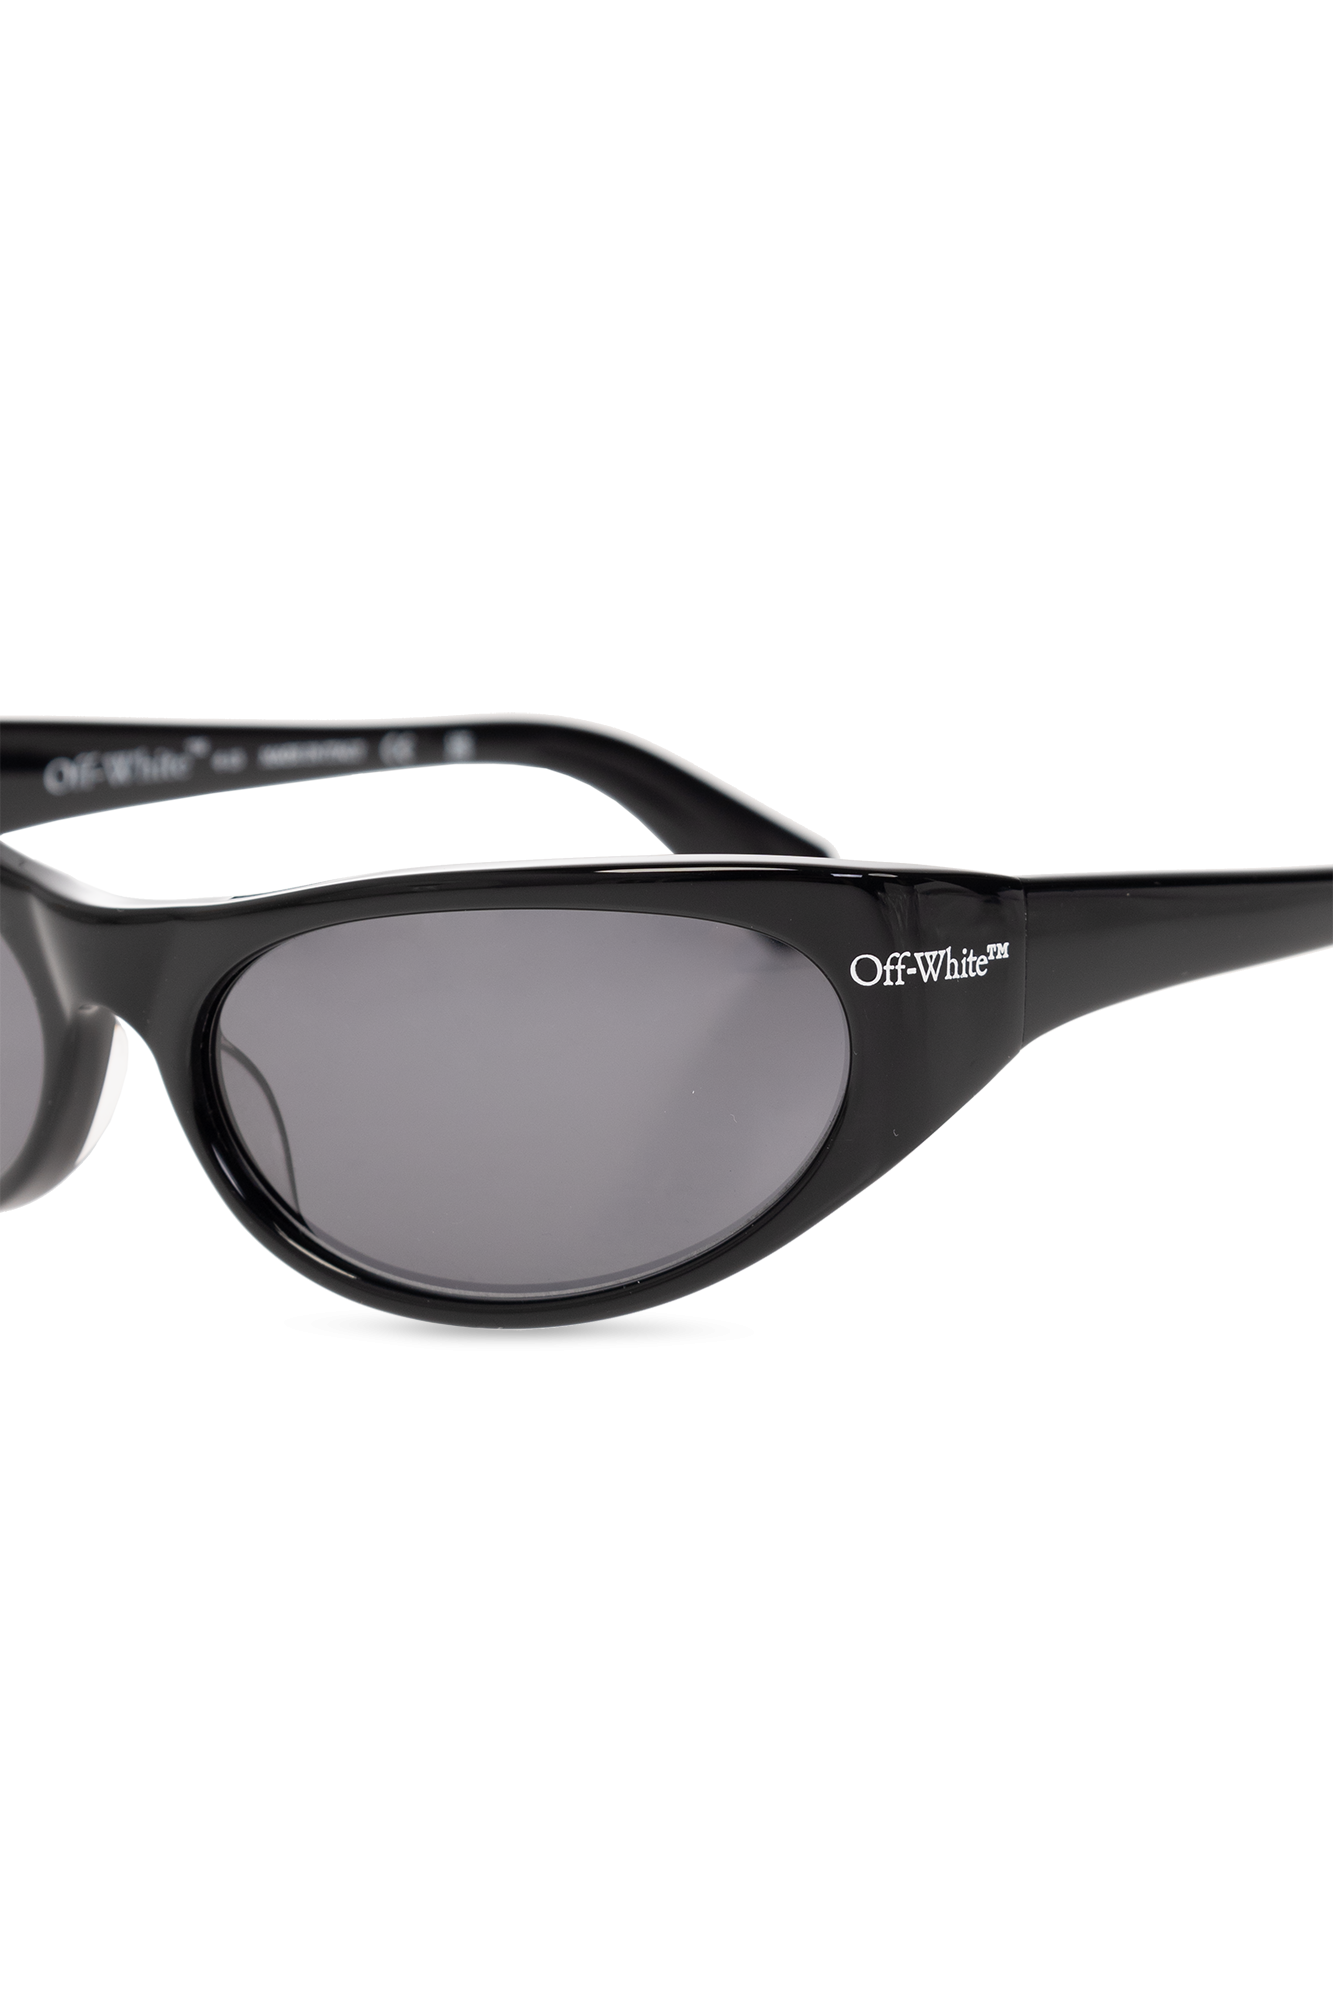 Off-White ‘Napoli’ sunglasses